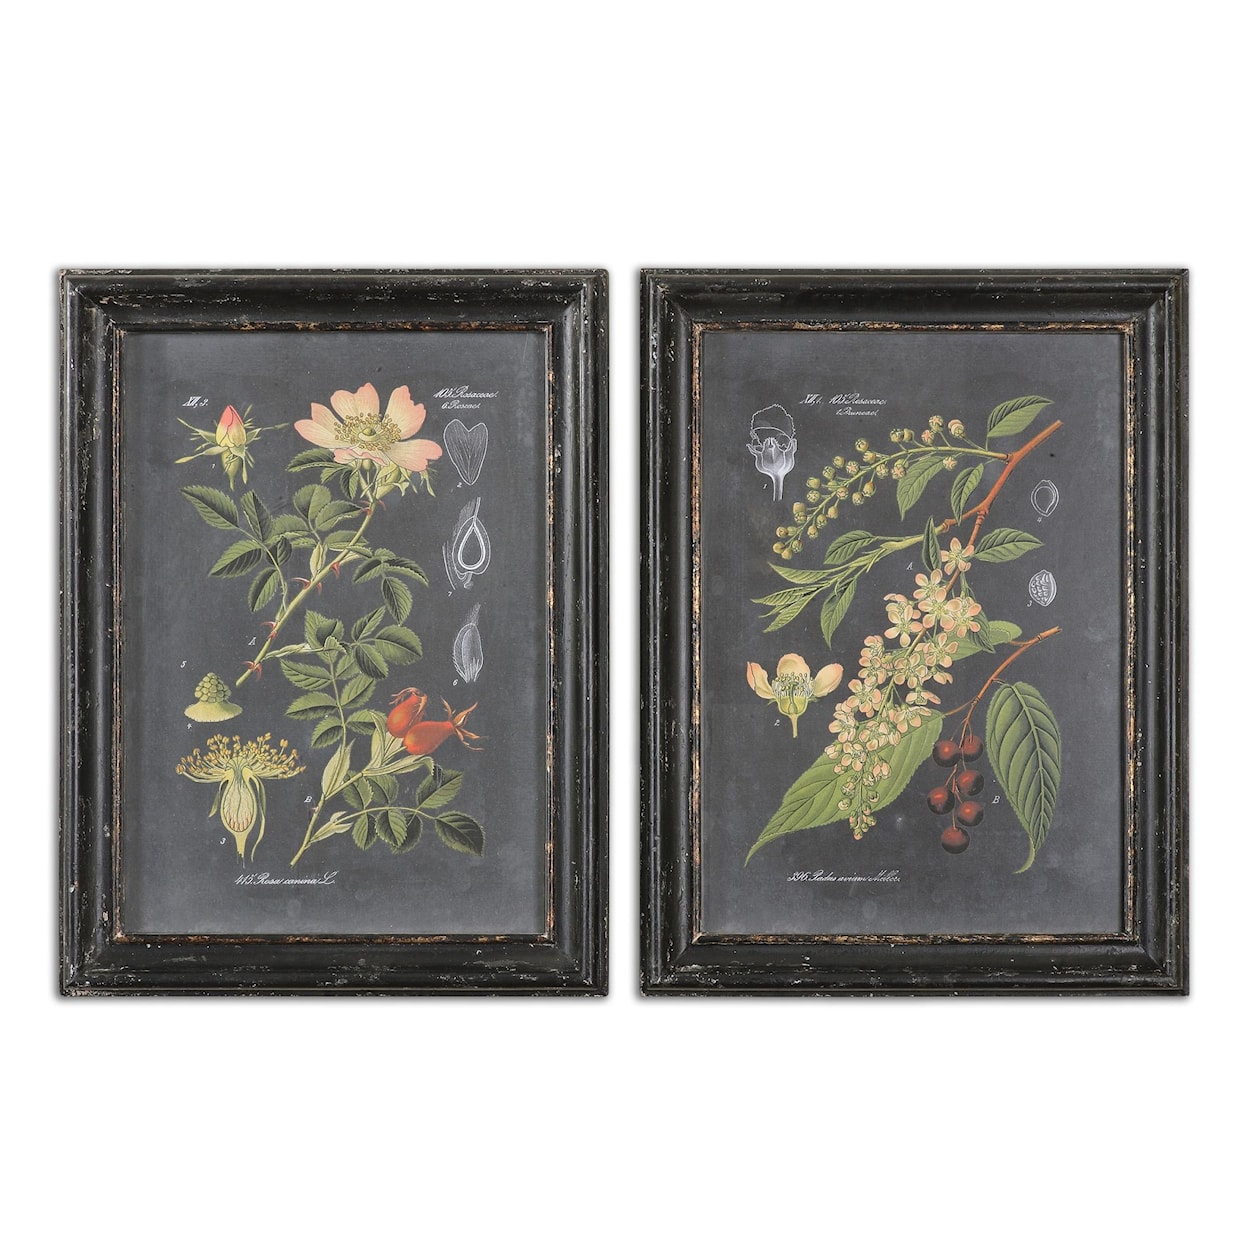 Uttermost Framed Prints Midnight Botanicals Framed Prints, Set of 2